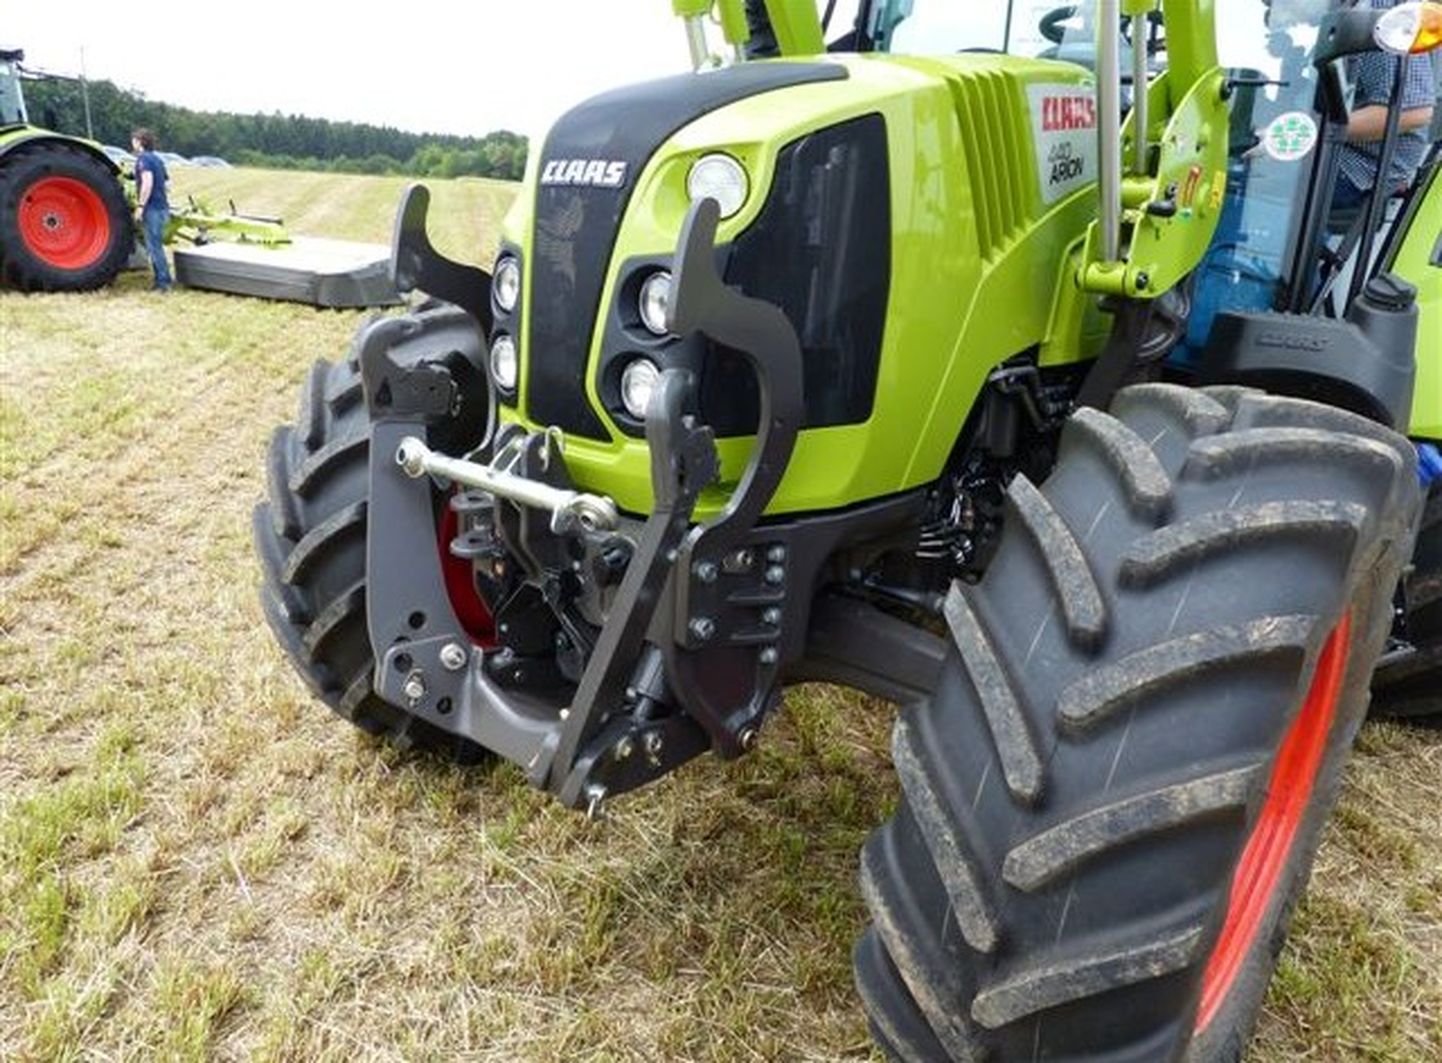 Põllul töötavate traktorite juures kasutatakse peamiselt nn kuusepuumustriga rehvi, mis tagab maksimaalse läbivuse, väldib libisemist ega kogu pinnast mustrivahedesse.